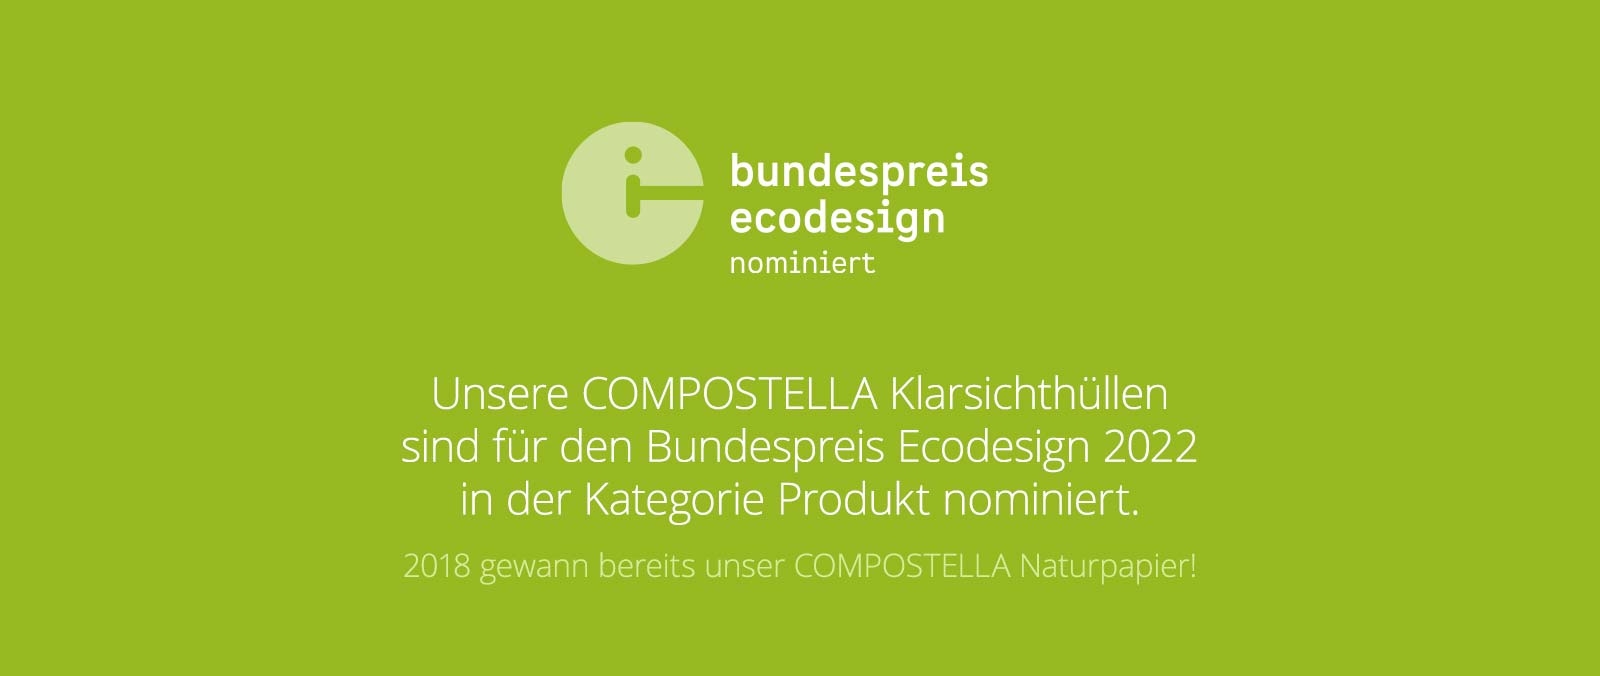 Compostella Nominierung Bundespreis Ecodesign 2022